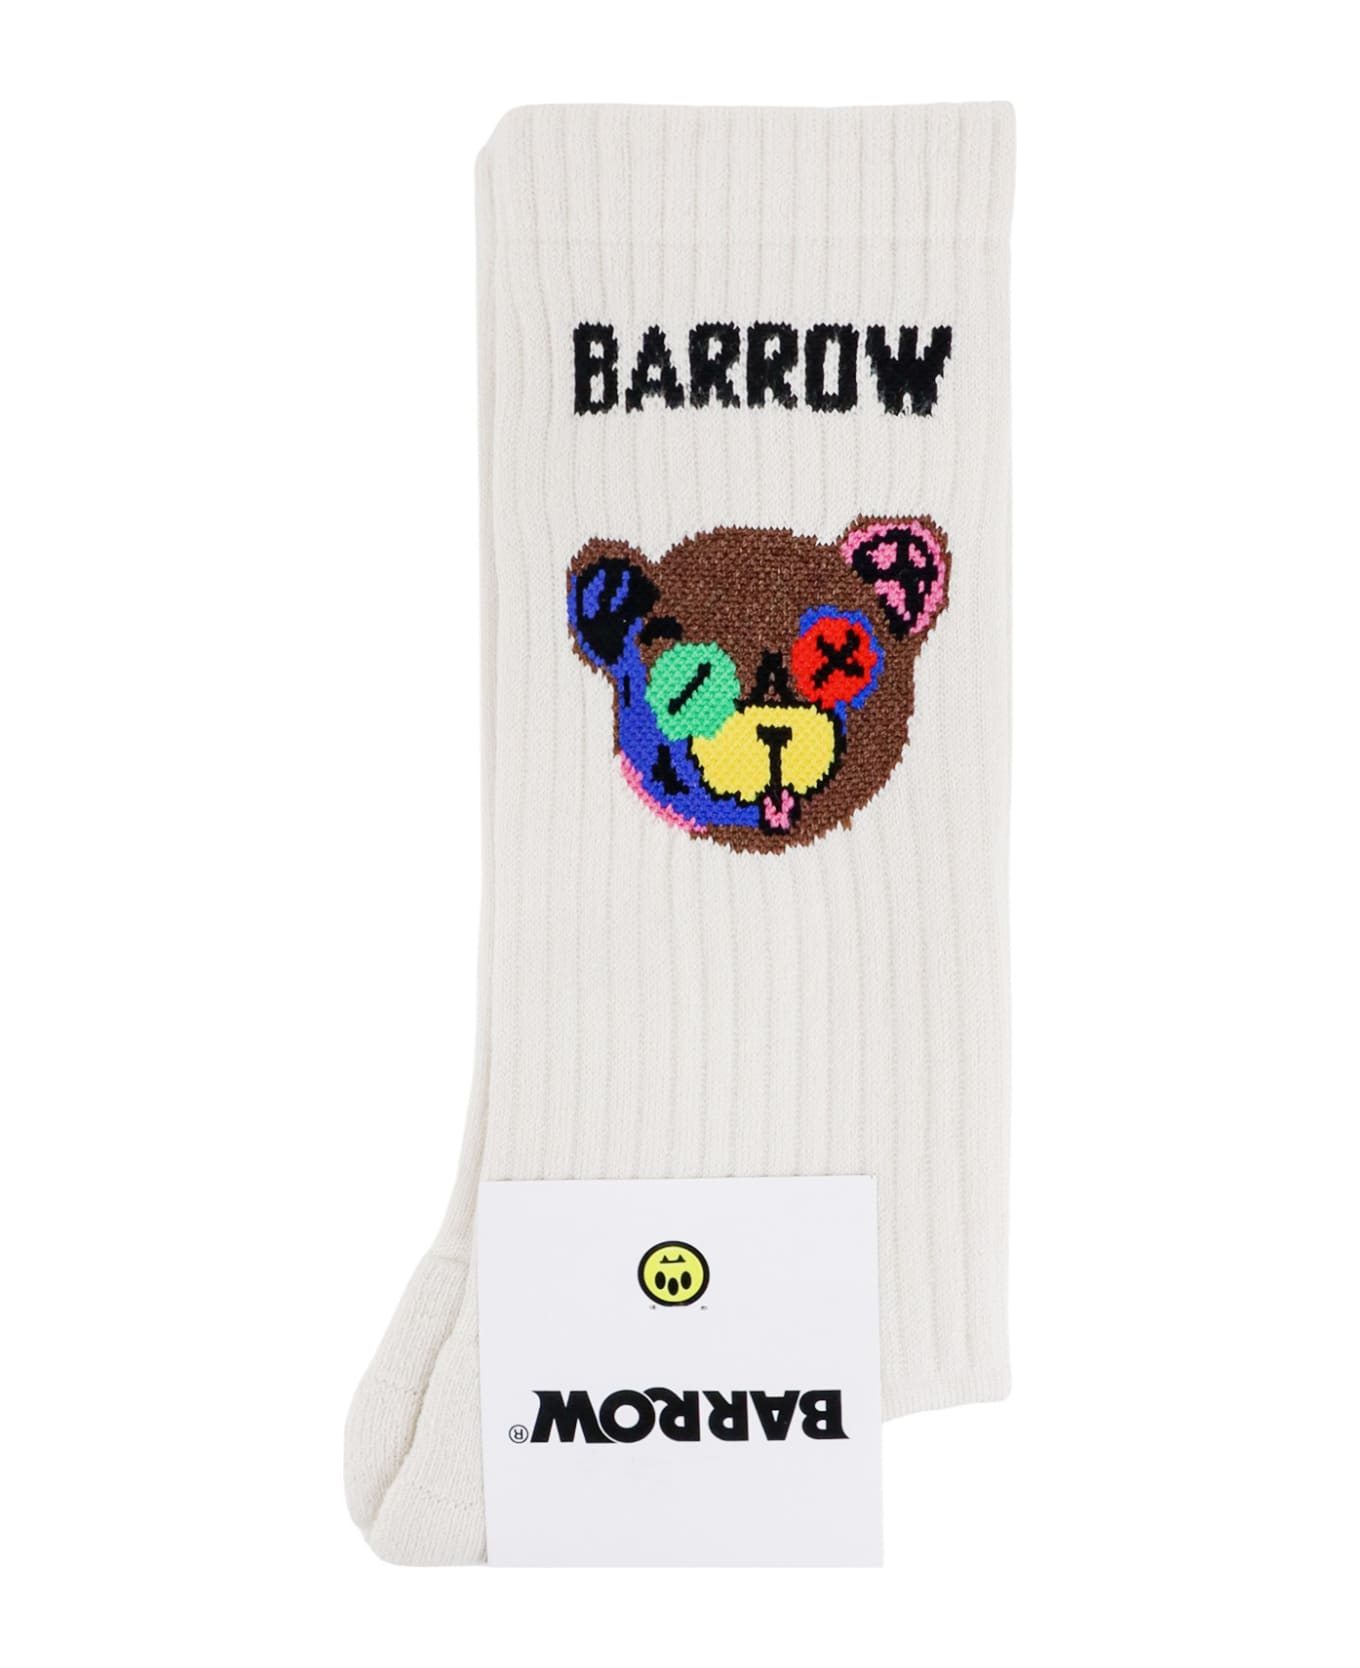 Barrow Socks - Bianco sporco